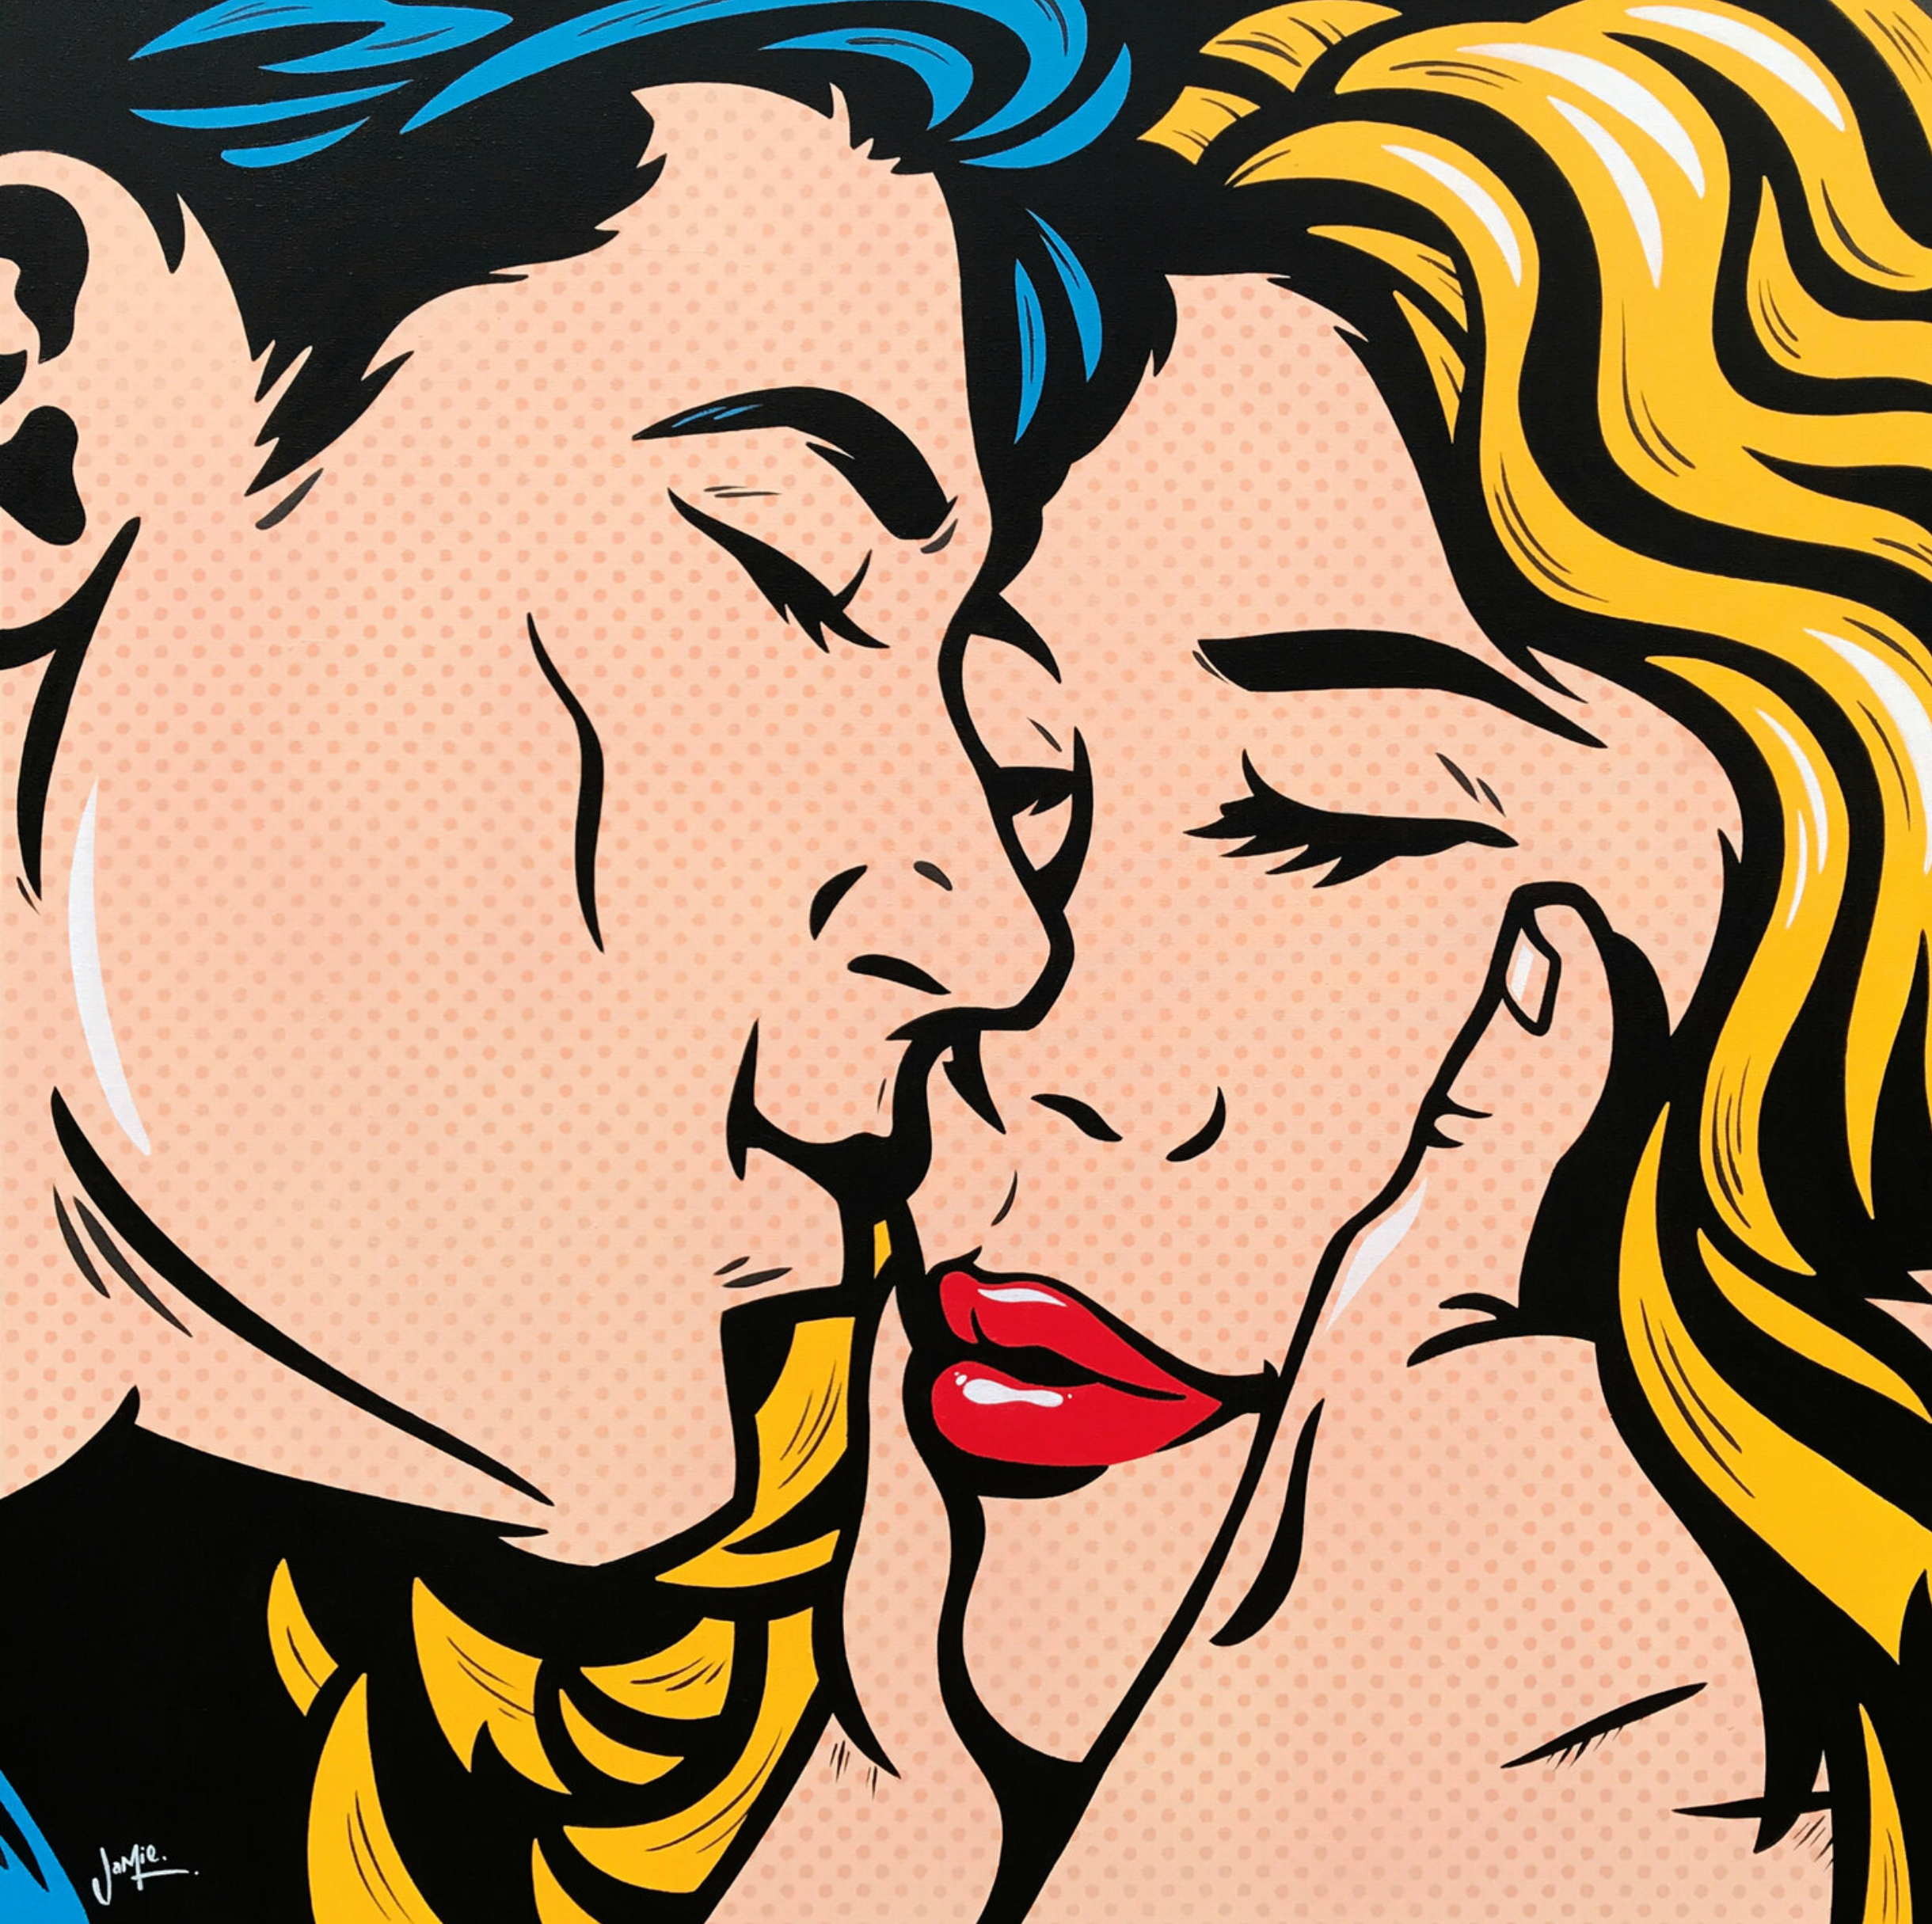 Peinture pop art de Jamie Lee "Anticipation" de style bande dessinée au design original, un jeune couple d'amoureux attend leur premier baiser alors qu'il tient délicatement leur visage. Peinture pop art de style bande dessinée au design original.